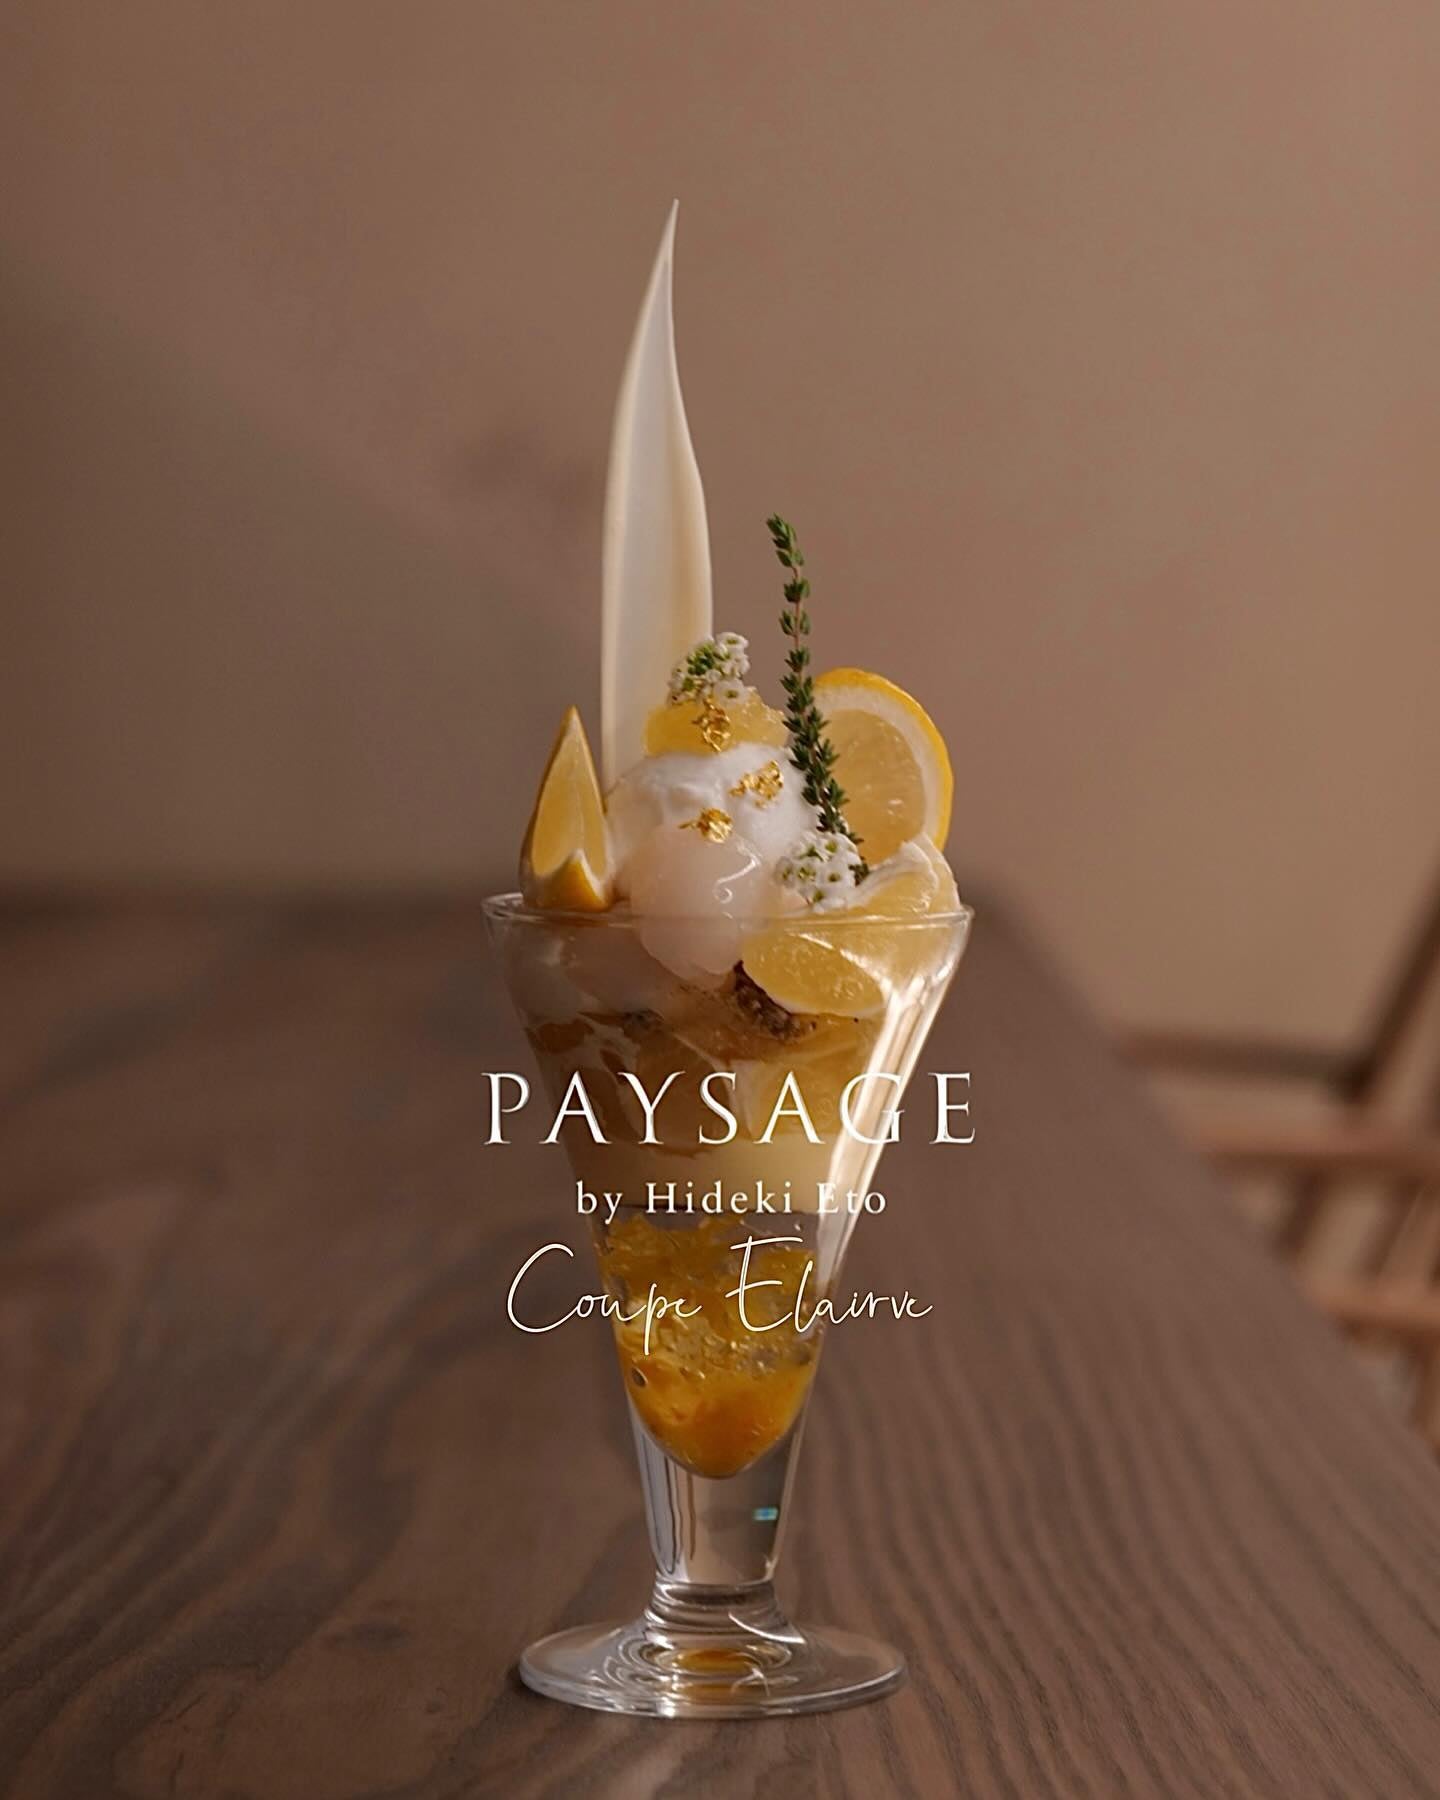 日本発プラントベースアイス「yumrich」、代官山 PAYSAGE とコラボレーション